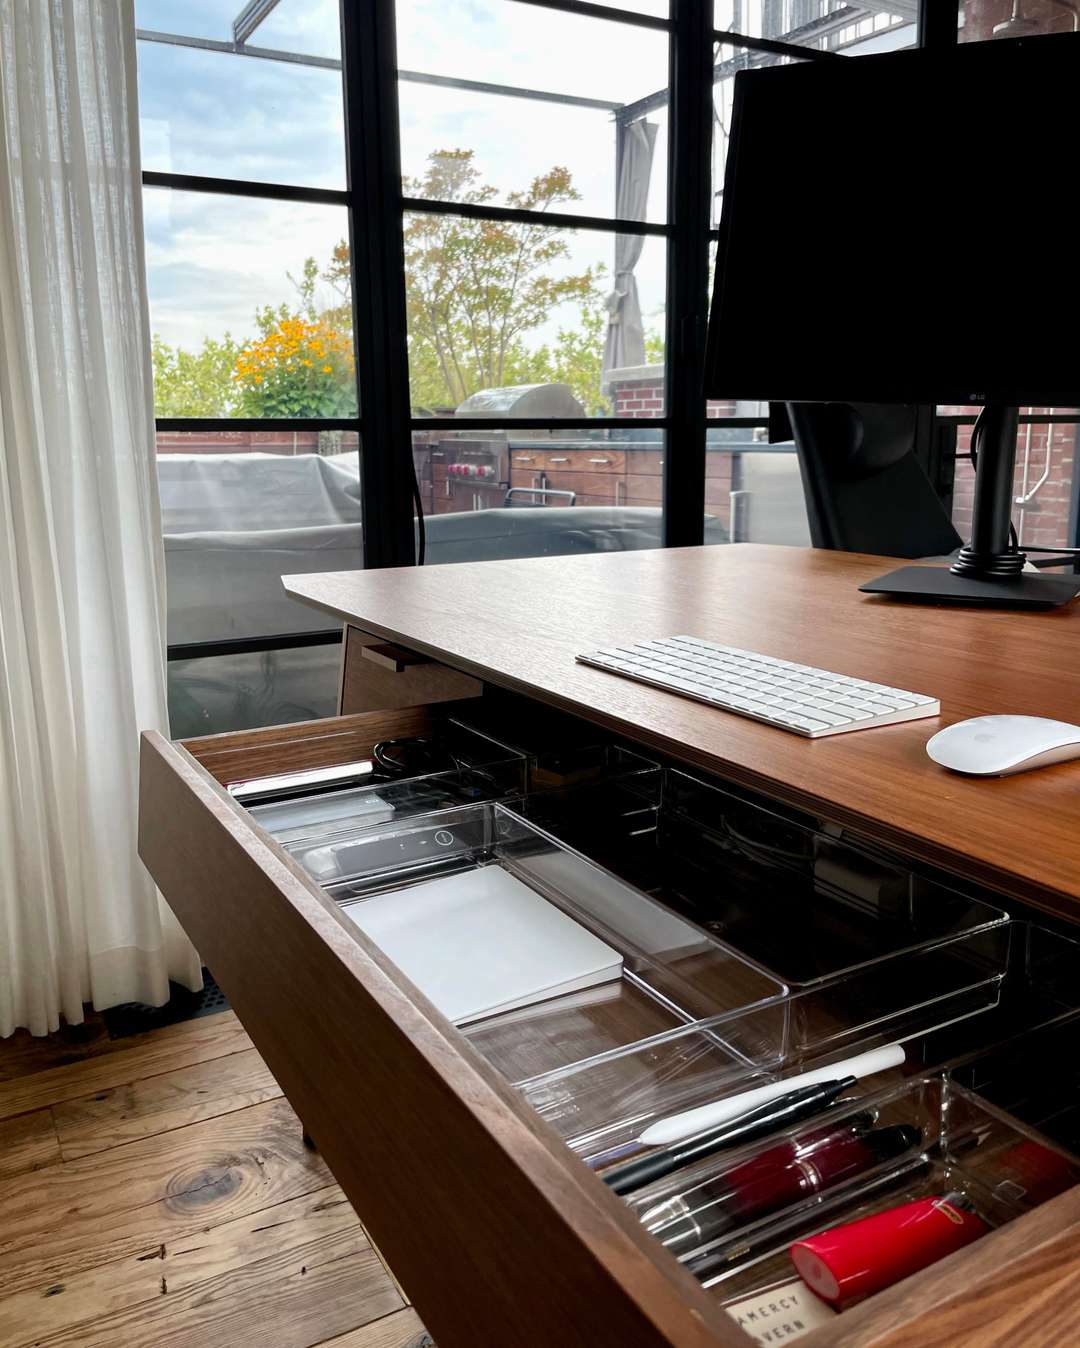 Oficina en casa minimalista con separadores de cajones